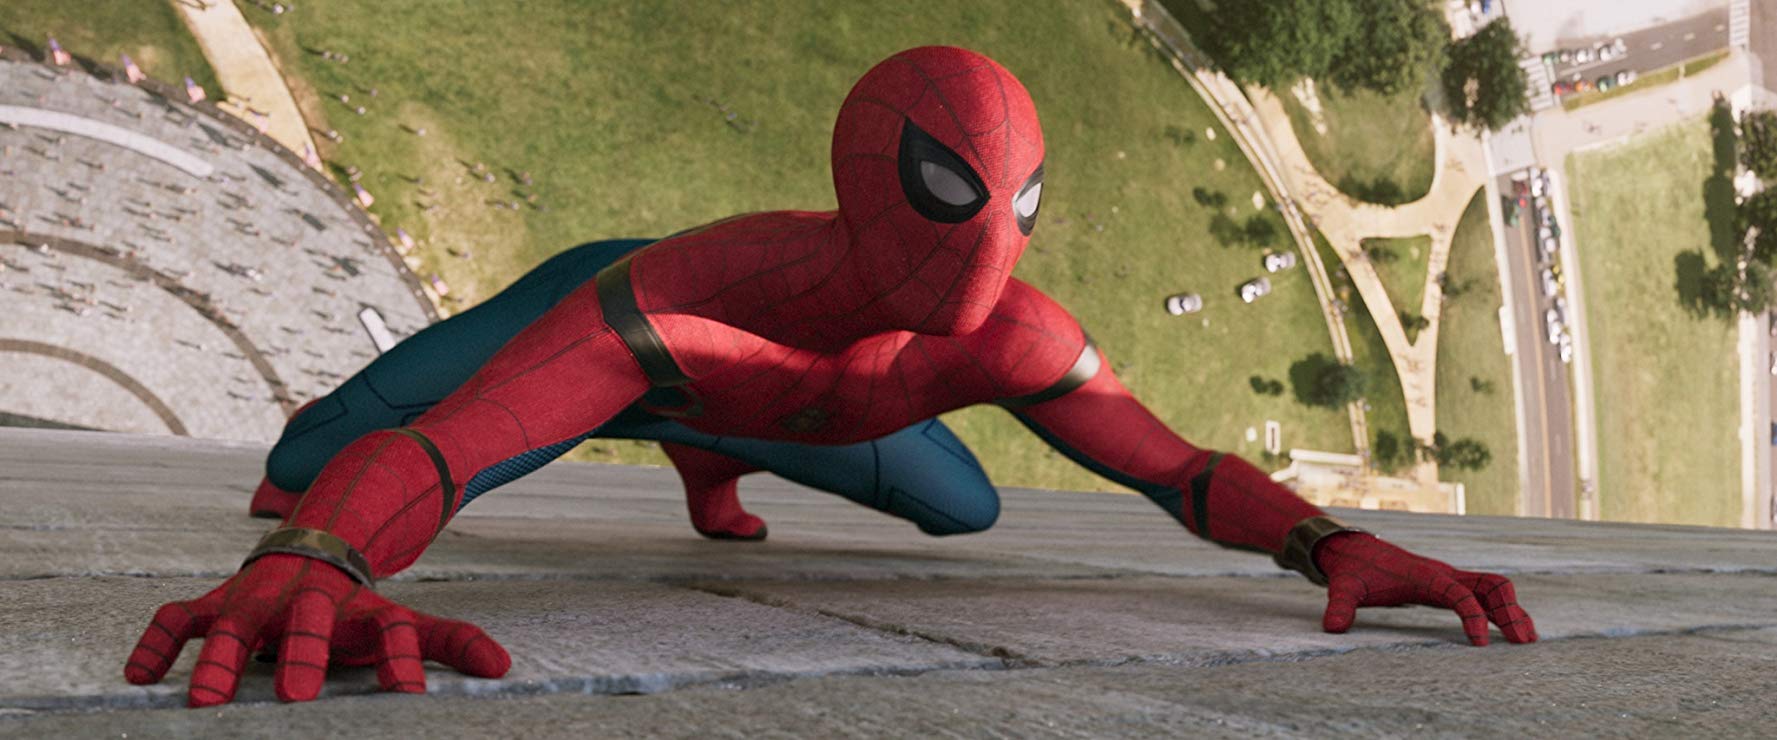 Girang Spider-Man Balik ke Marvel, Netizen: Kayak Ria Ricis!